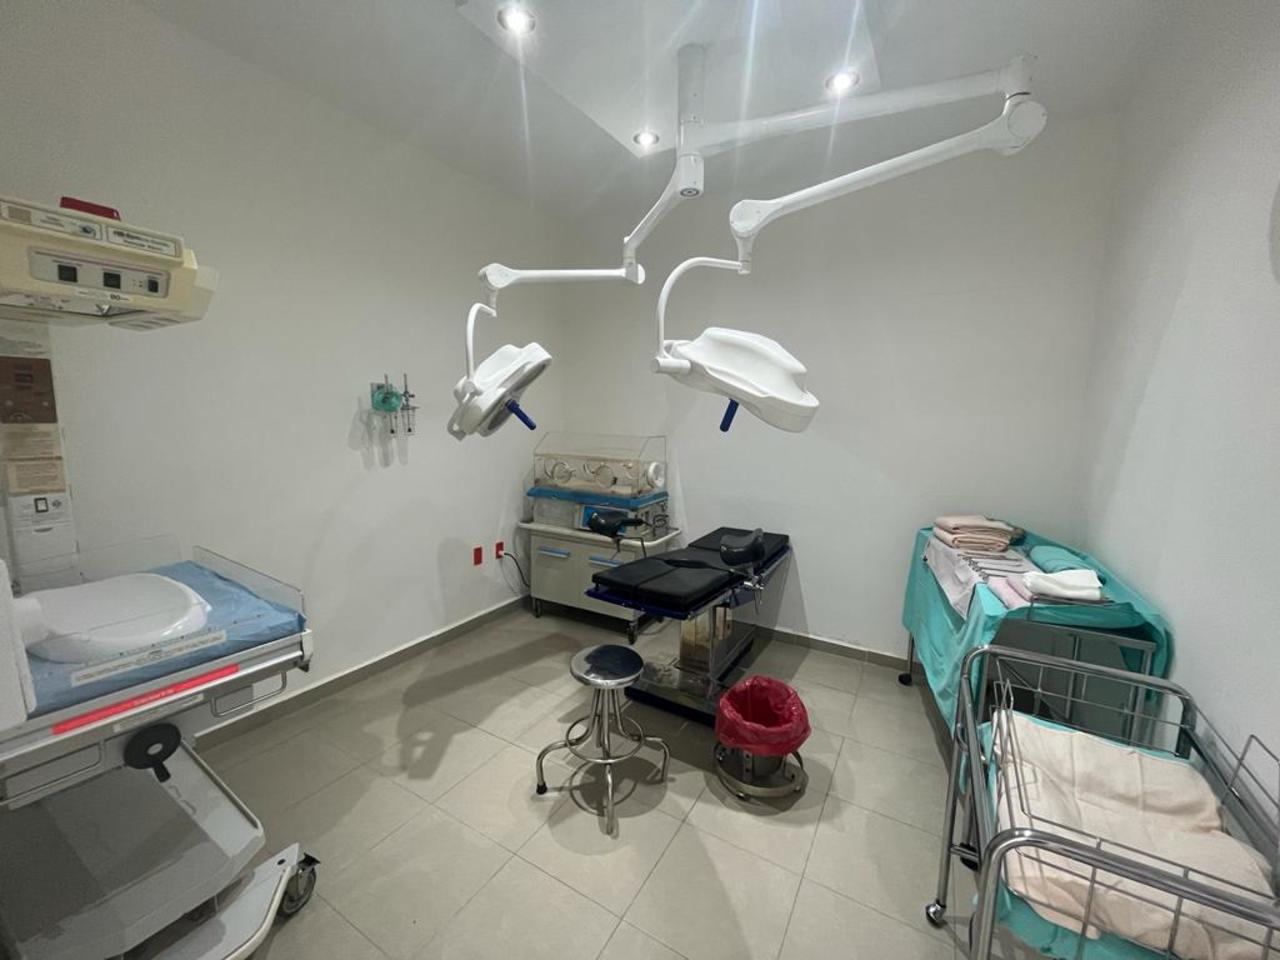 Se cuenta con una sala de parto y se cuenta con el personal capacitado para practicar cesáreas, laparoscopia o apendicitis.